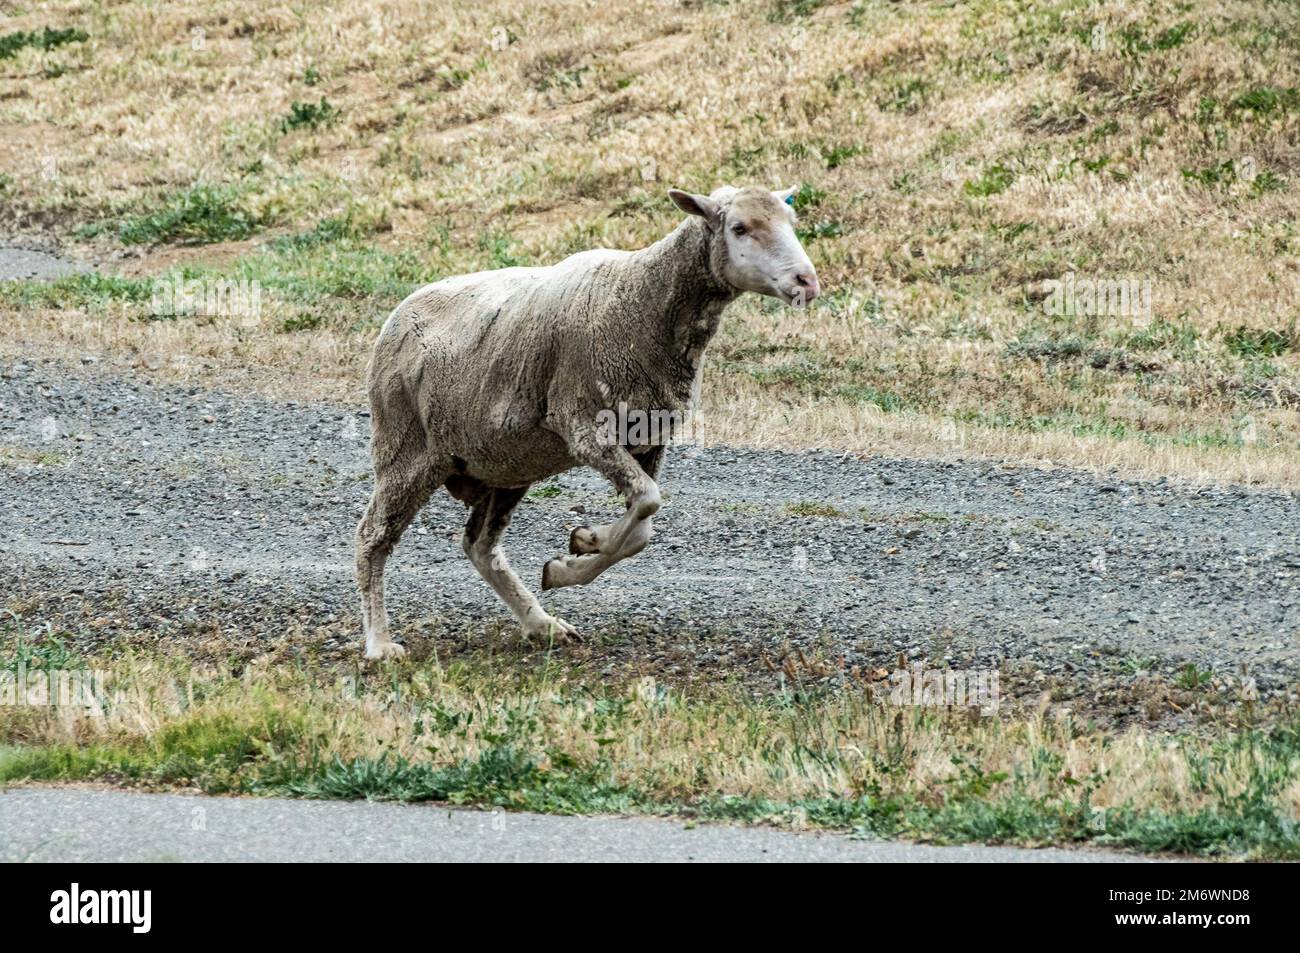 Am Luftwaffenstützpunkt Travis, Kalifornien, zieht sich ein Schaf auf den freien Platz. 6. Mai 2022. Eine Herde von etwa 1.000 Schafen wurde freigelassen, um überwuchertes Unkraut zu beseitigen, sodass keine Herbizide und Maschinen mehr benötigt werden. Diese Weidemethode spart Zeit und Geld, reduziert Brandgefahren und schützt die Umwelt. Stockfoto